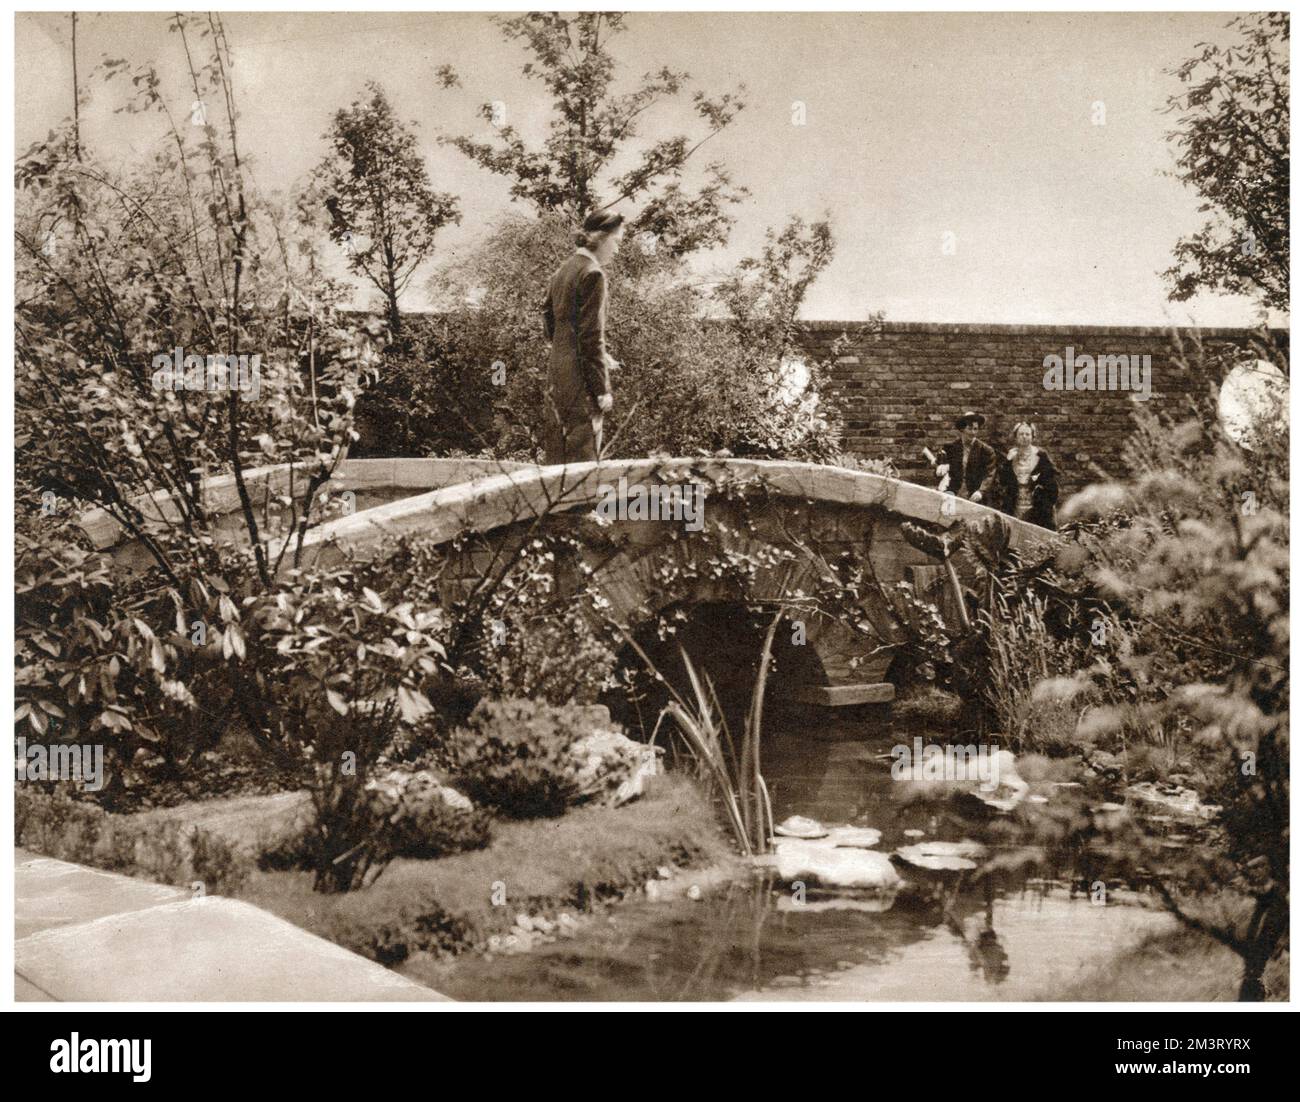 Un pont en pierre enjambant le ruisseau entouré d'arbres dans le jardin Old English, partie du jardin sur le toit au sommet de Derry et Toms sur Kensington High Street, Ouvert en 1938 et accessible par le public qui a payé un shilling pour l'entrée amassant de l'argent pour le Queens Institute of District Nursing. Date: 1938 Banque D'Images